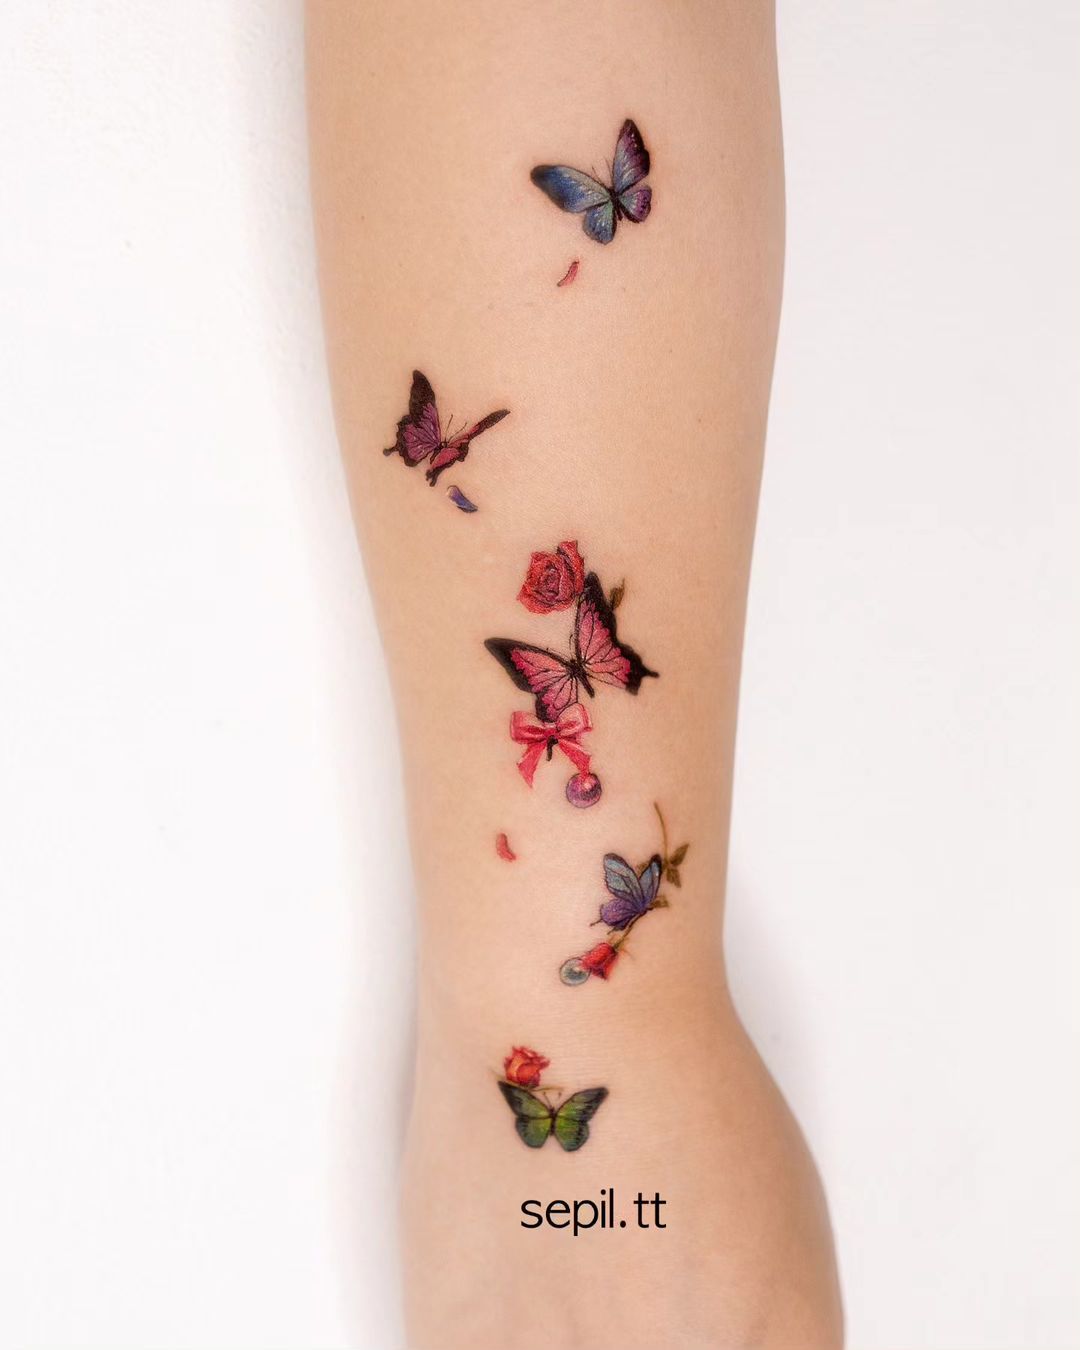 Butterfly tattoo ideas by sepil.tt